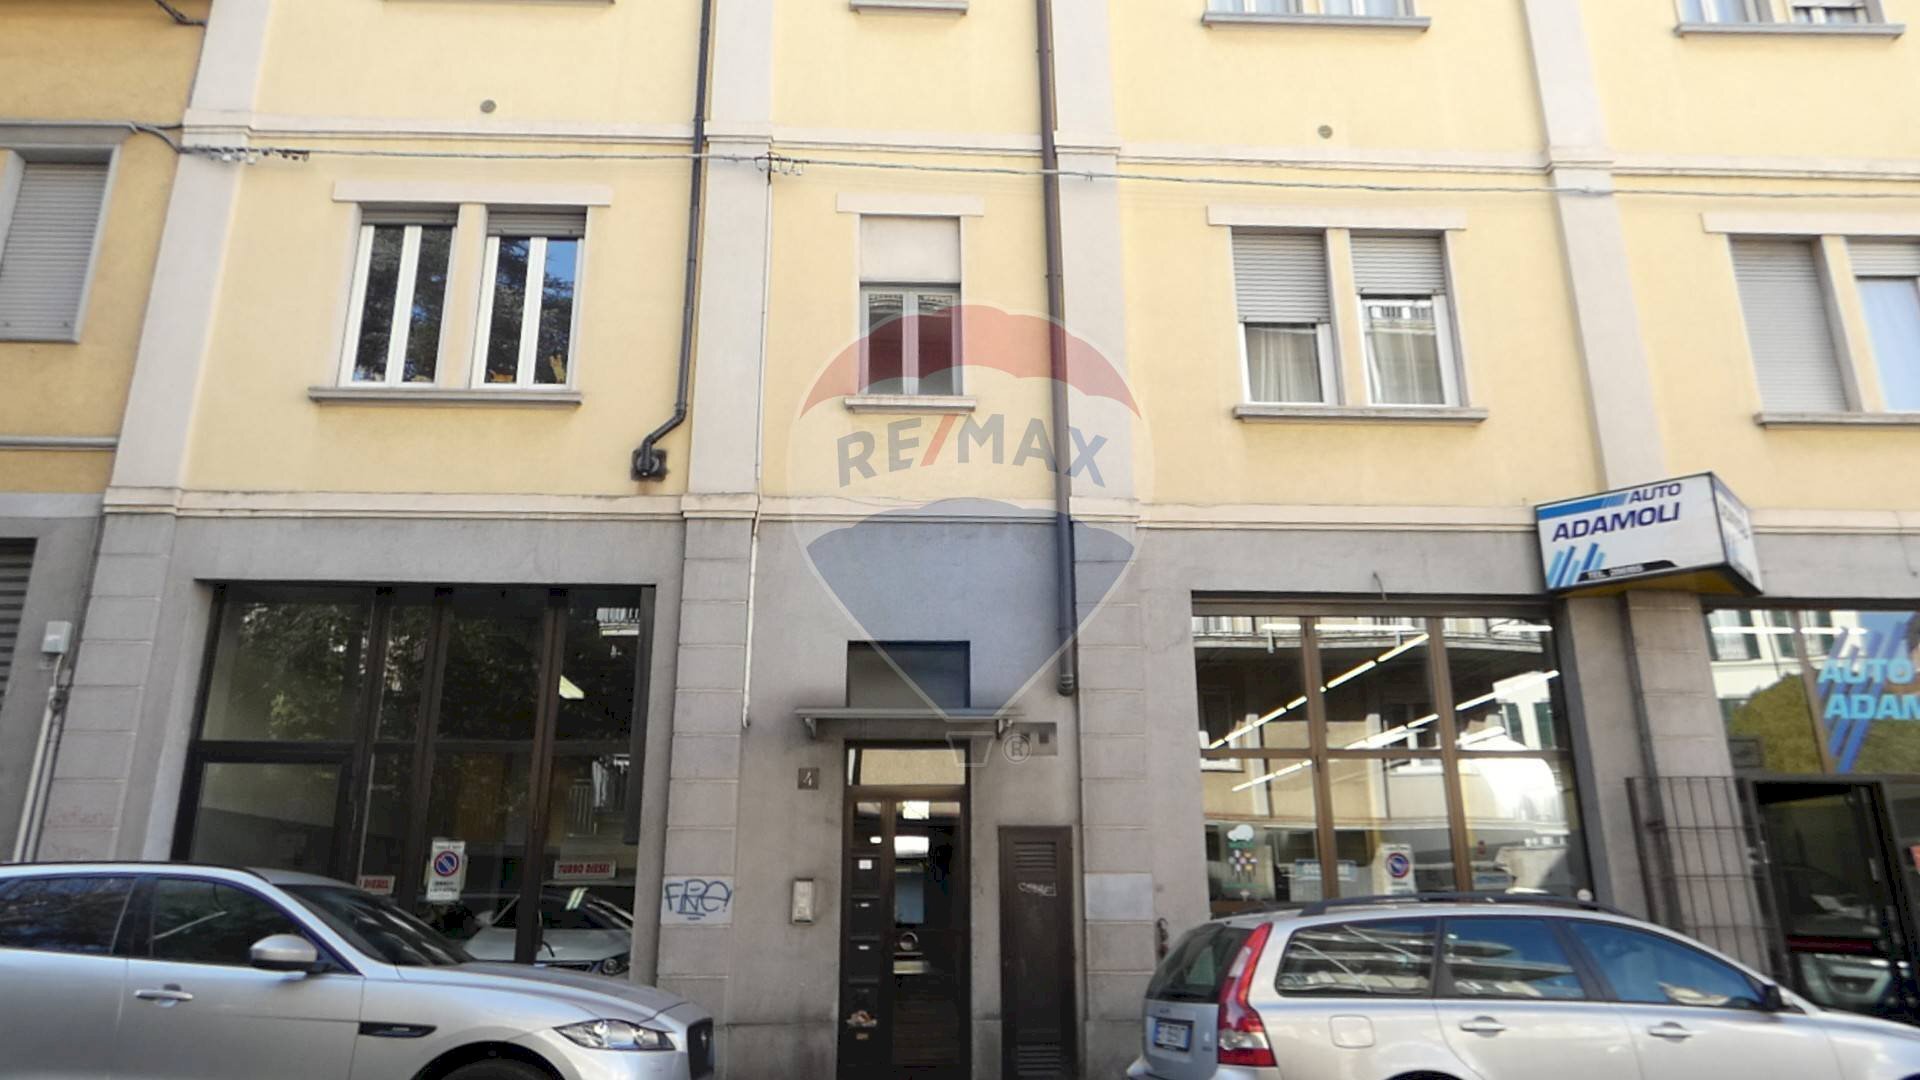 Vendita Appartamento Via Adamoli, Varese